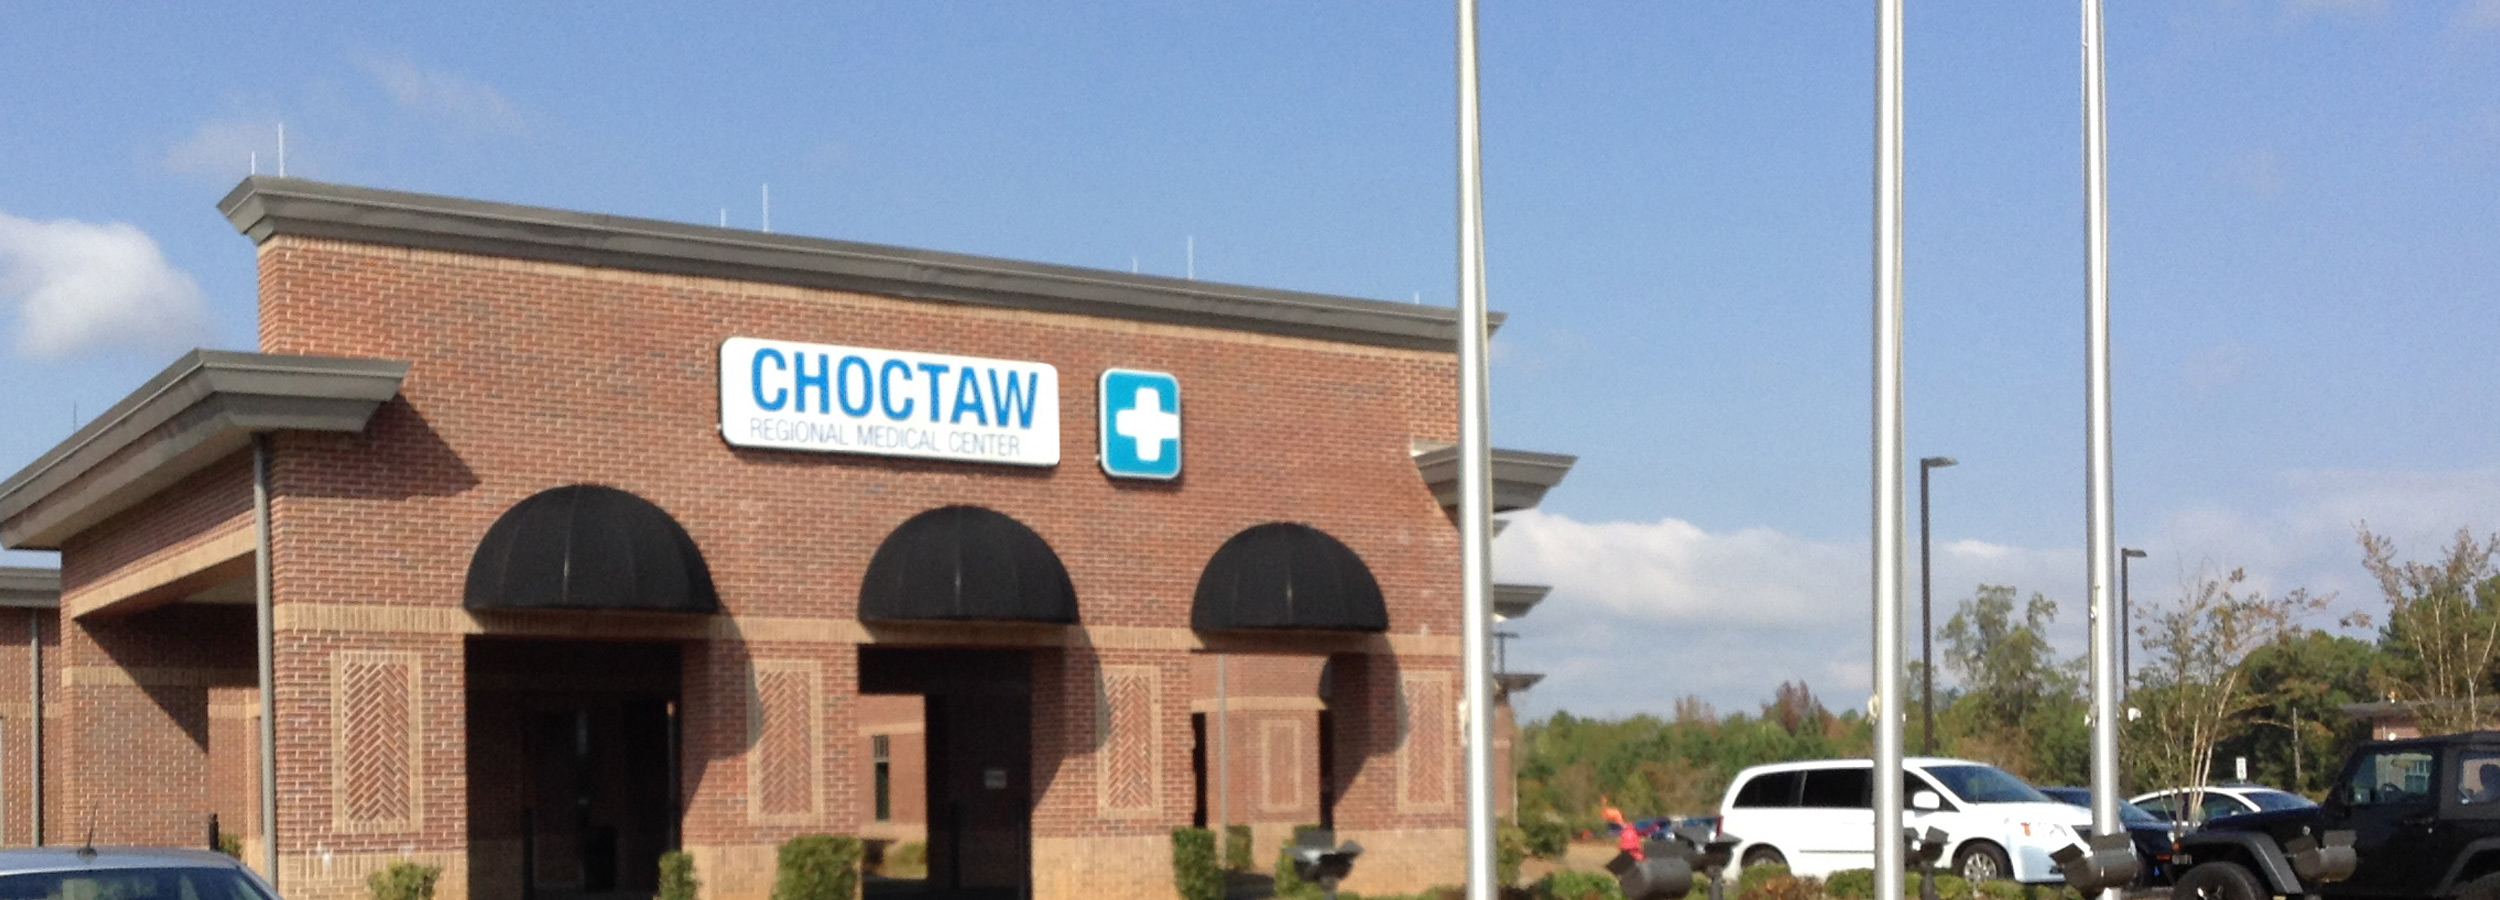 Locations - Choctaw Regional Medical Center